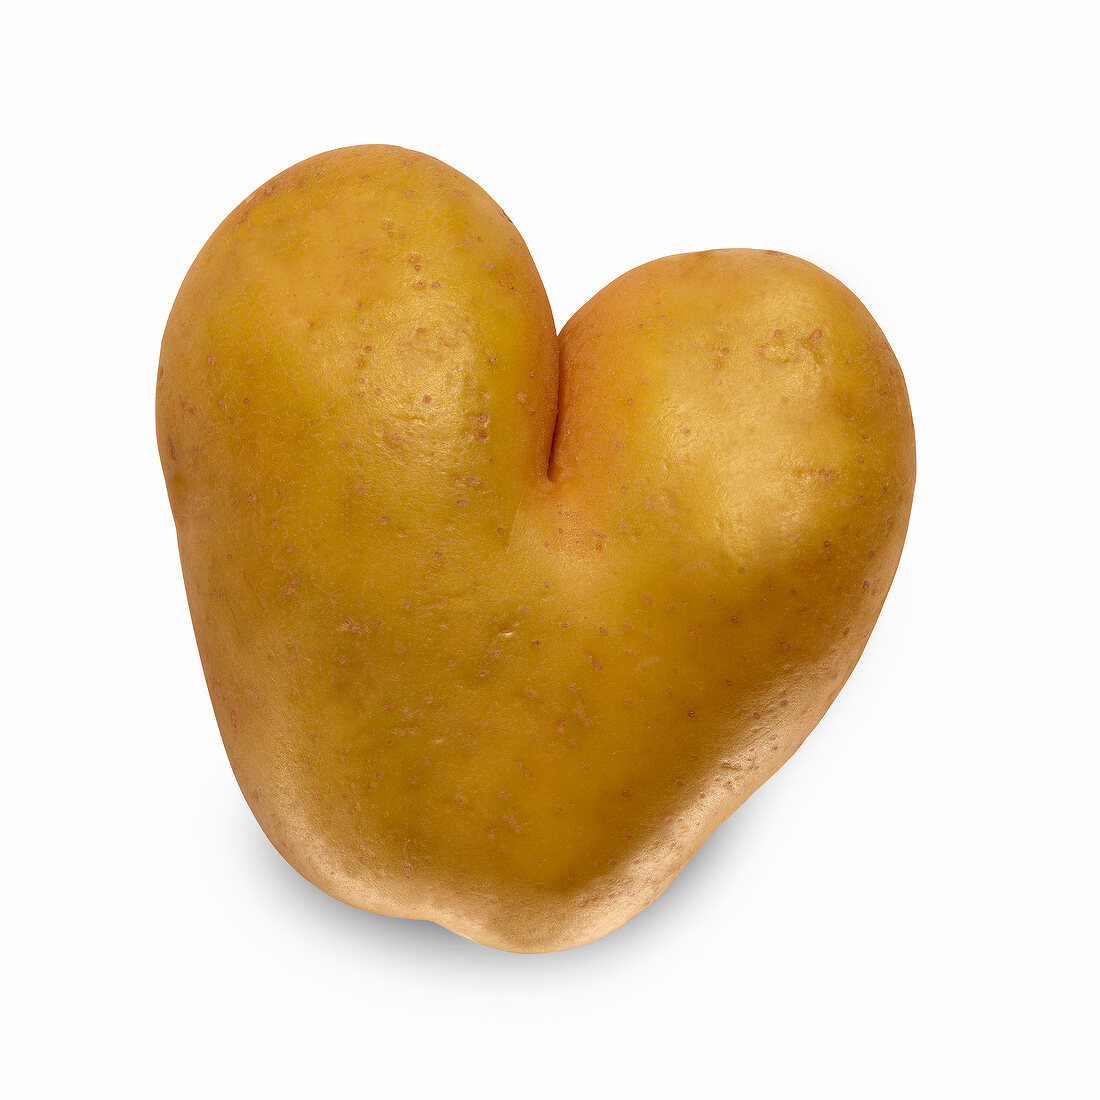 Herzförmige Kartoffel